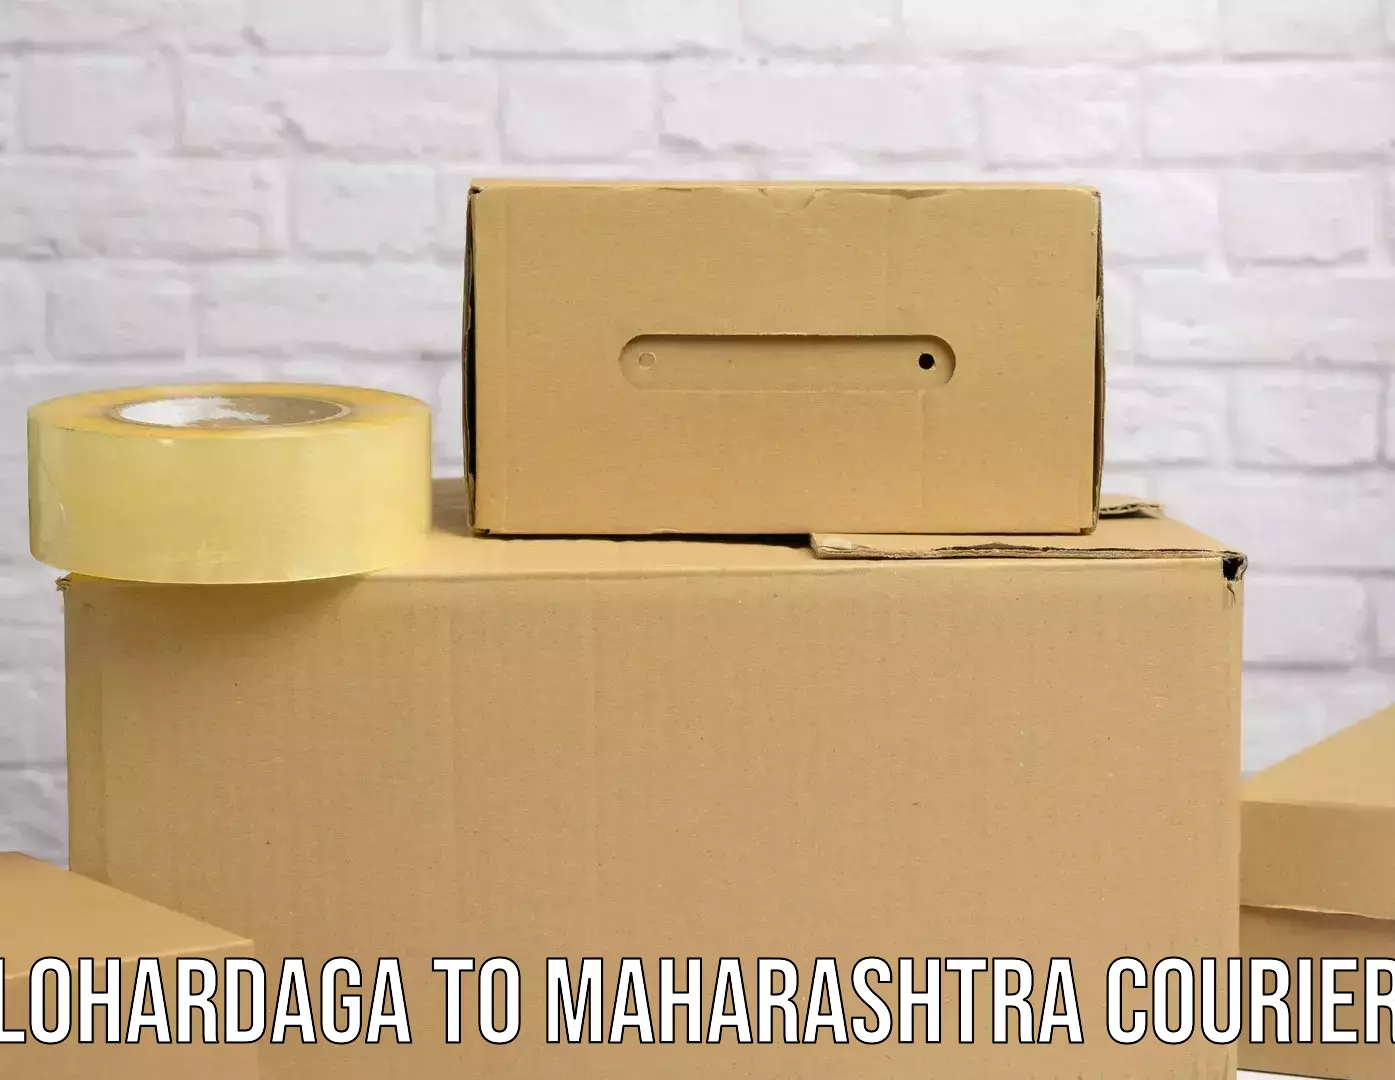 High-capacity courier solutions Lohardaga to Maharashtra